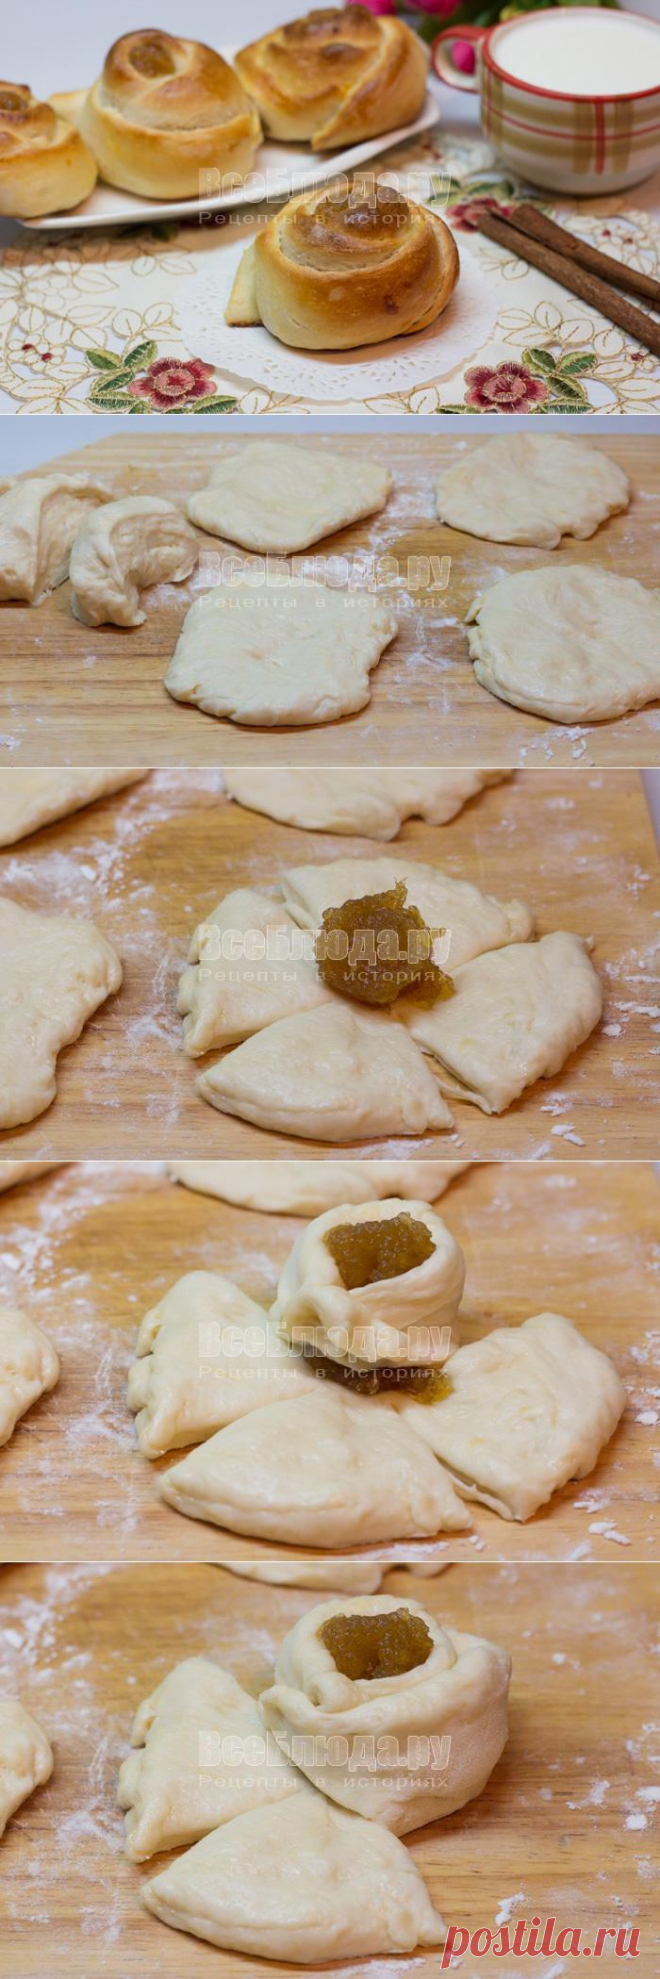 Как делать булочки Розочки с яблочным повидлом, рецепт с фото | Все Блюда